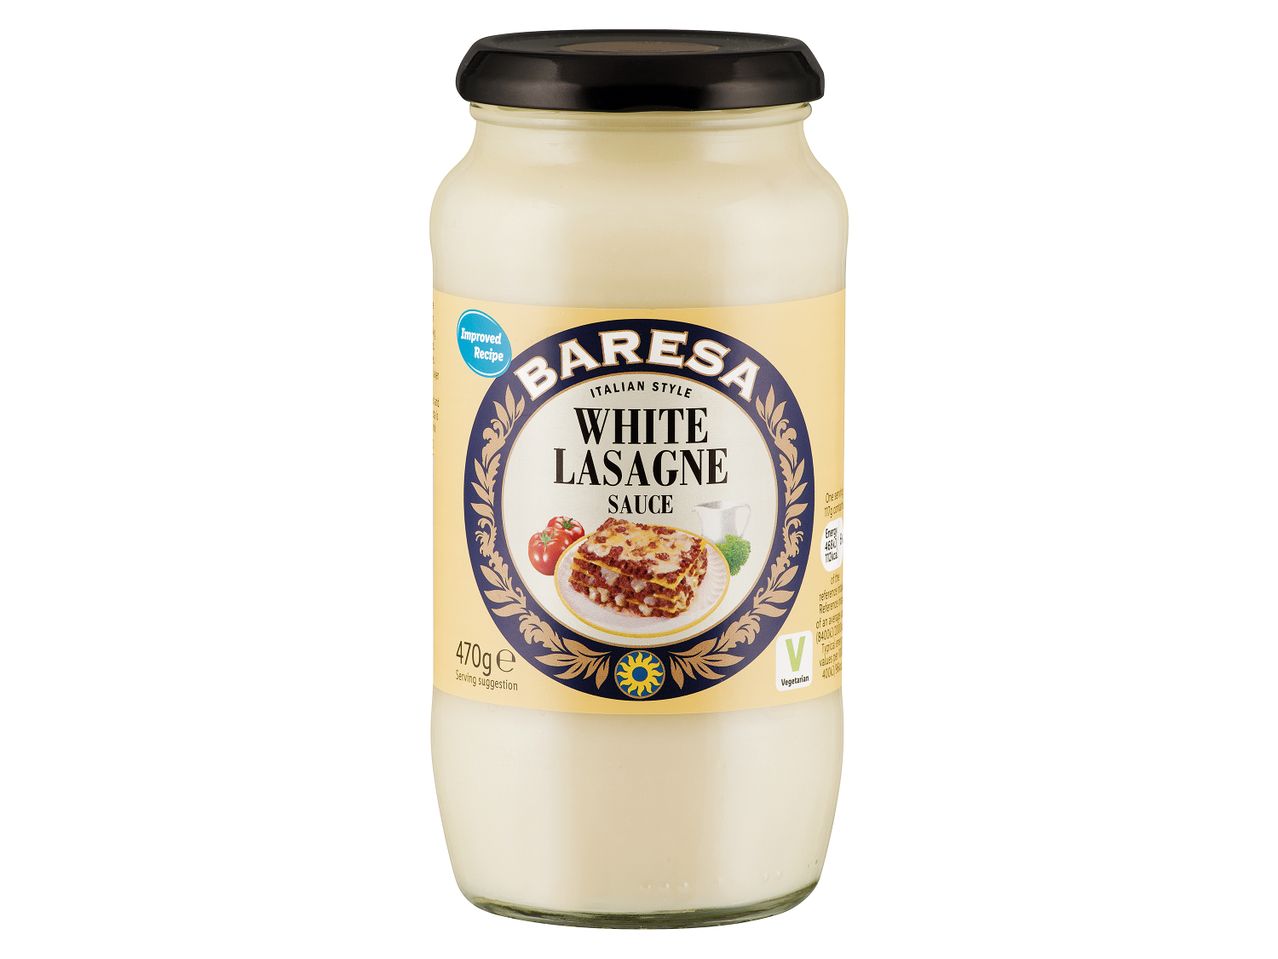 Go to full screen view: Baresa Lasagne Sauce - Image 1